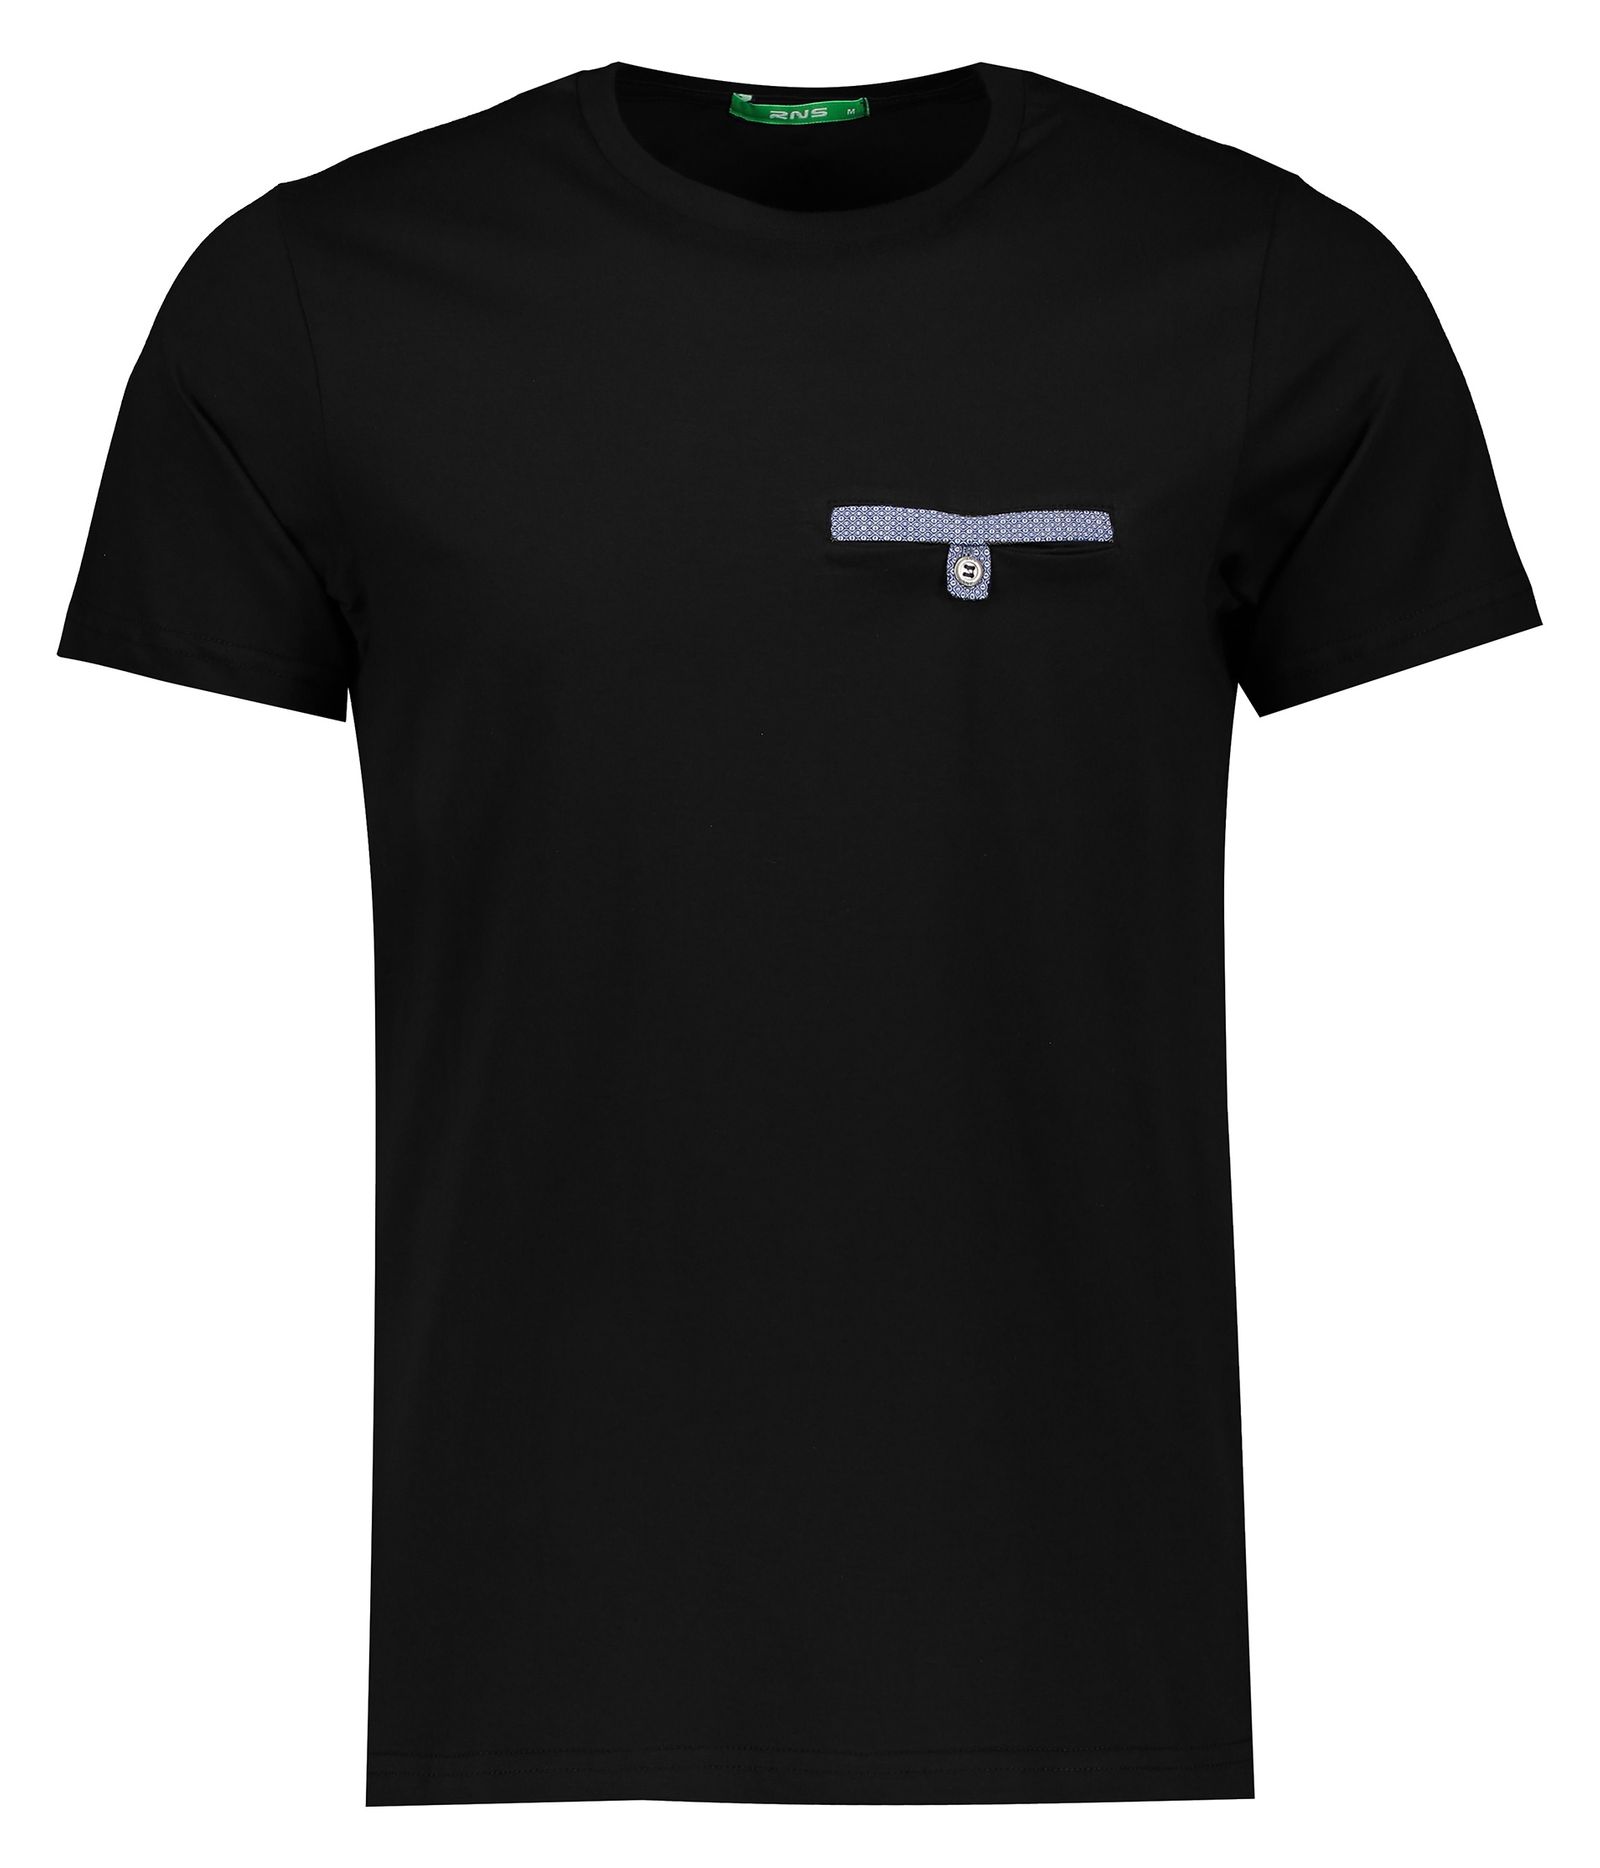 تی شرت مردانه آر ان اس مدل 1131116-99 -  - 1